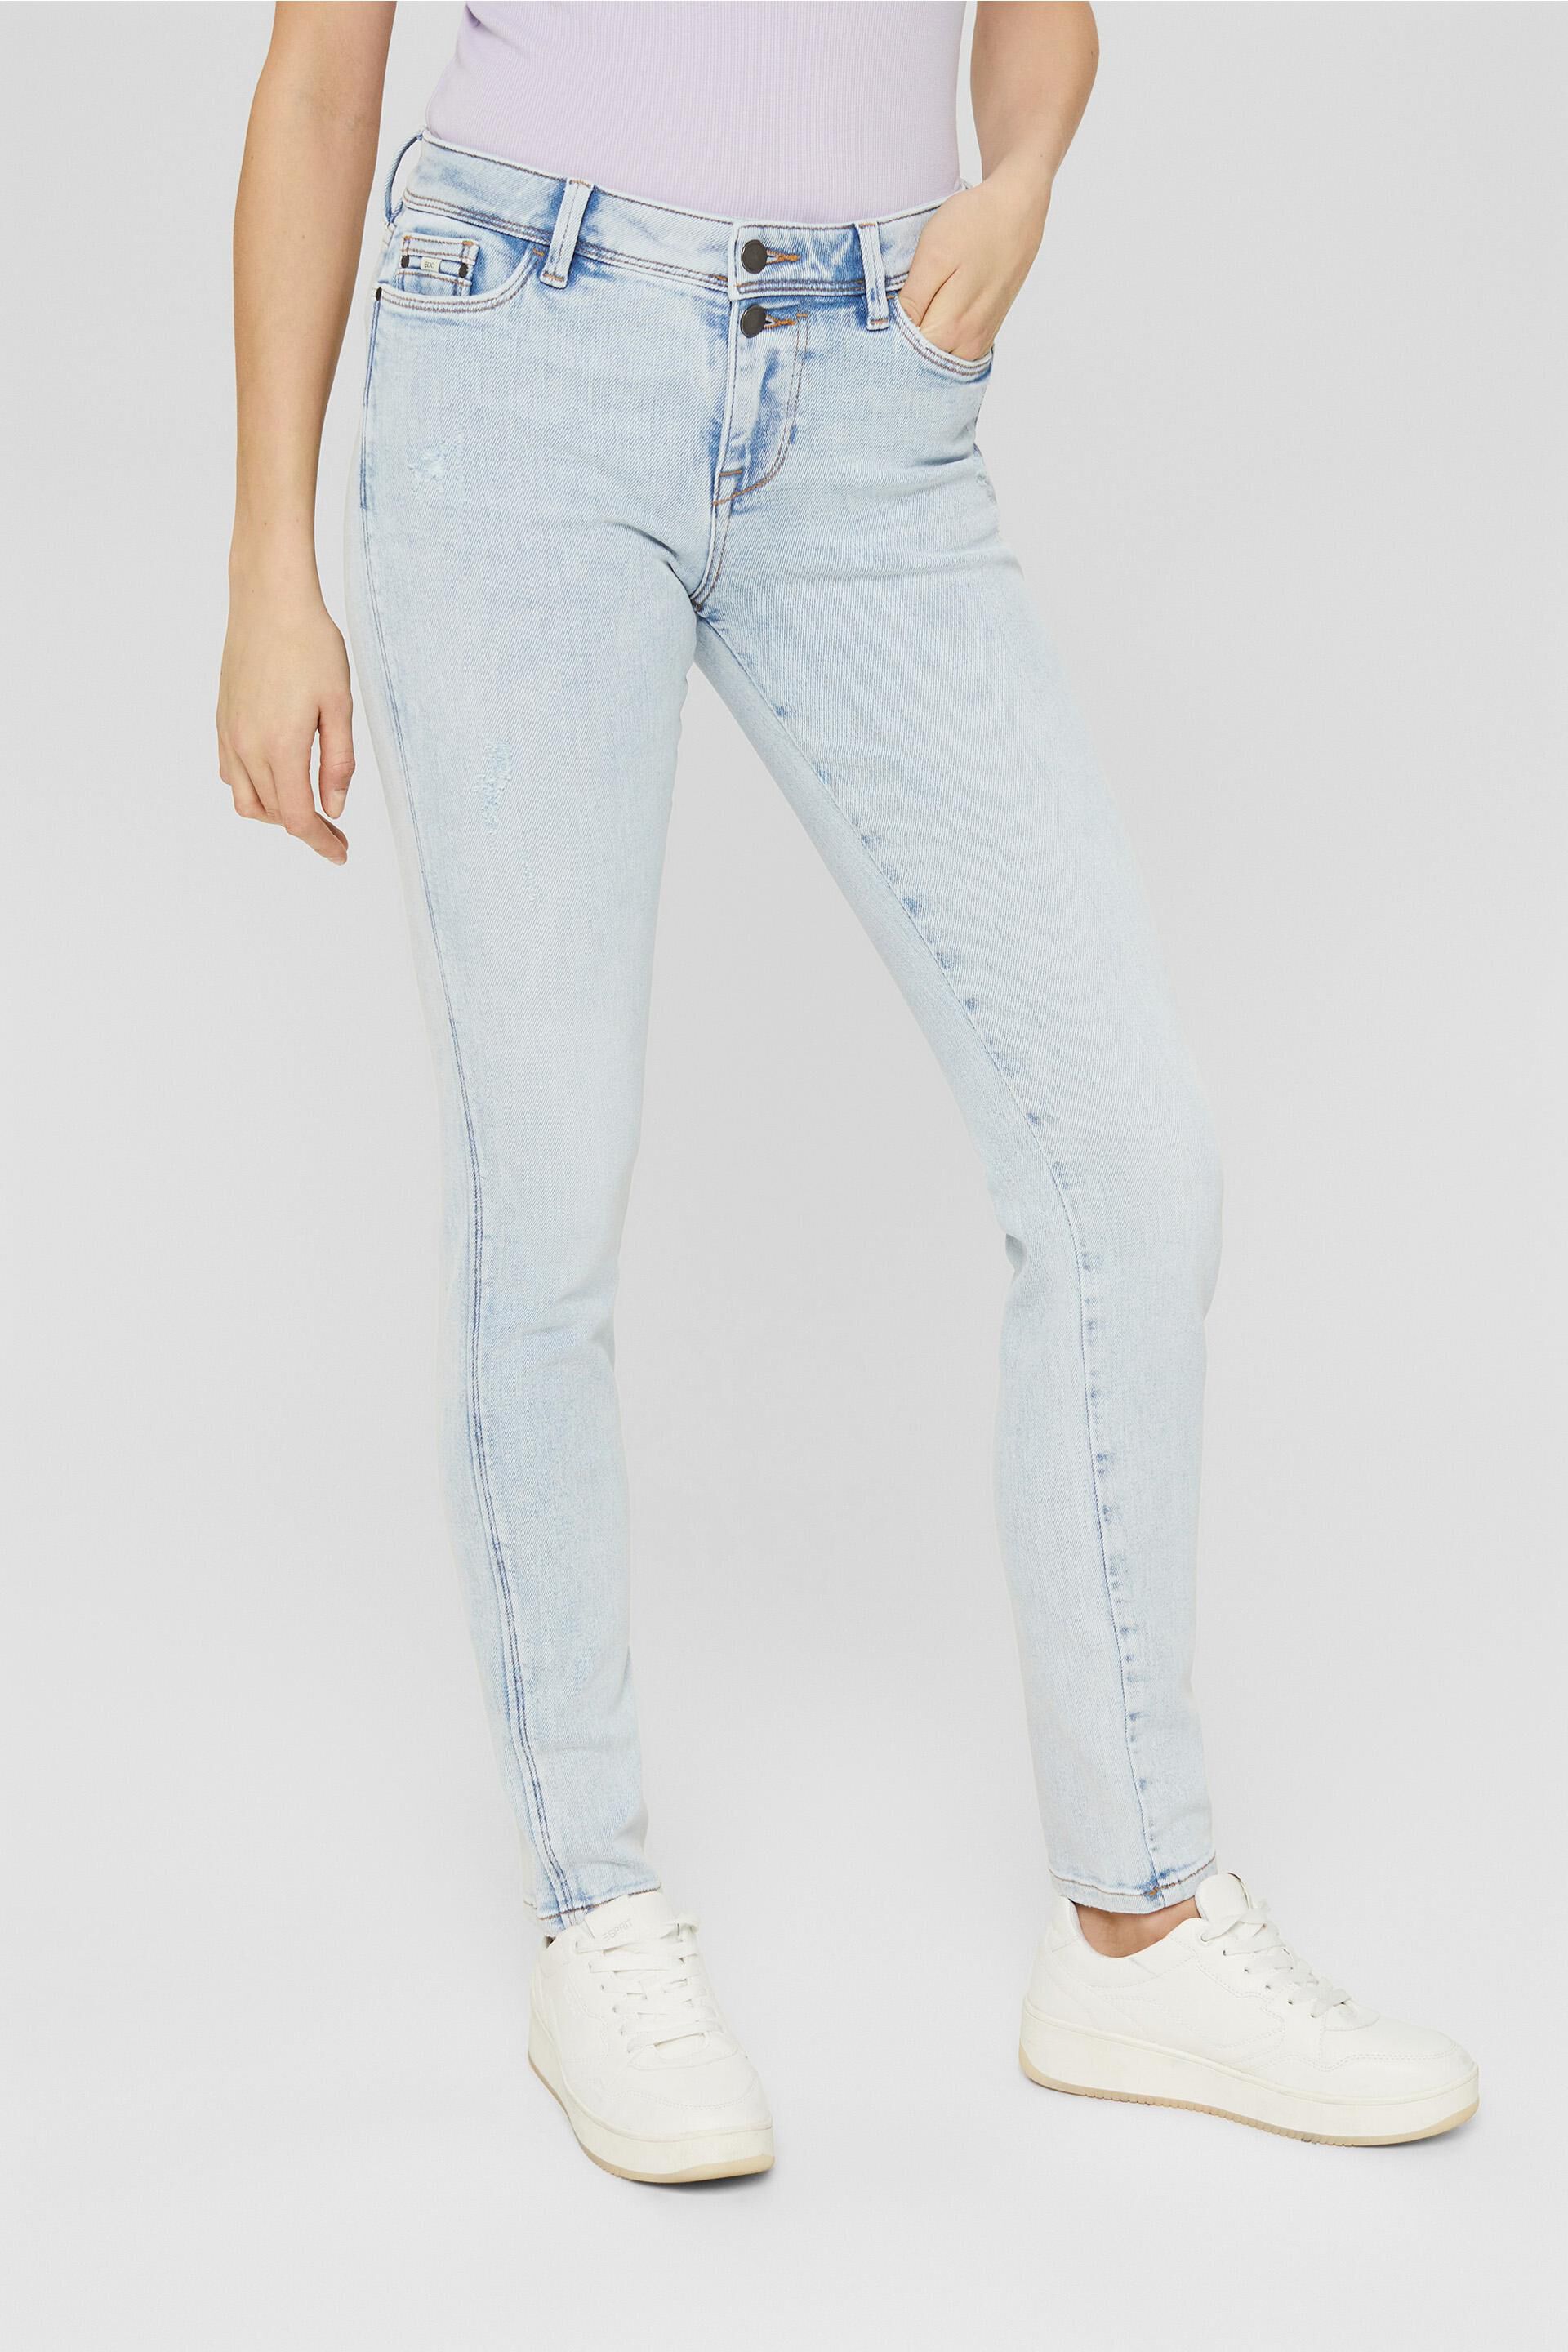 Mode Spijkerbroeken Slim jeans Esprit Slim jeans blauw casual uitstraling 